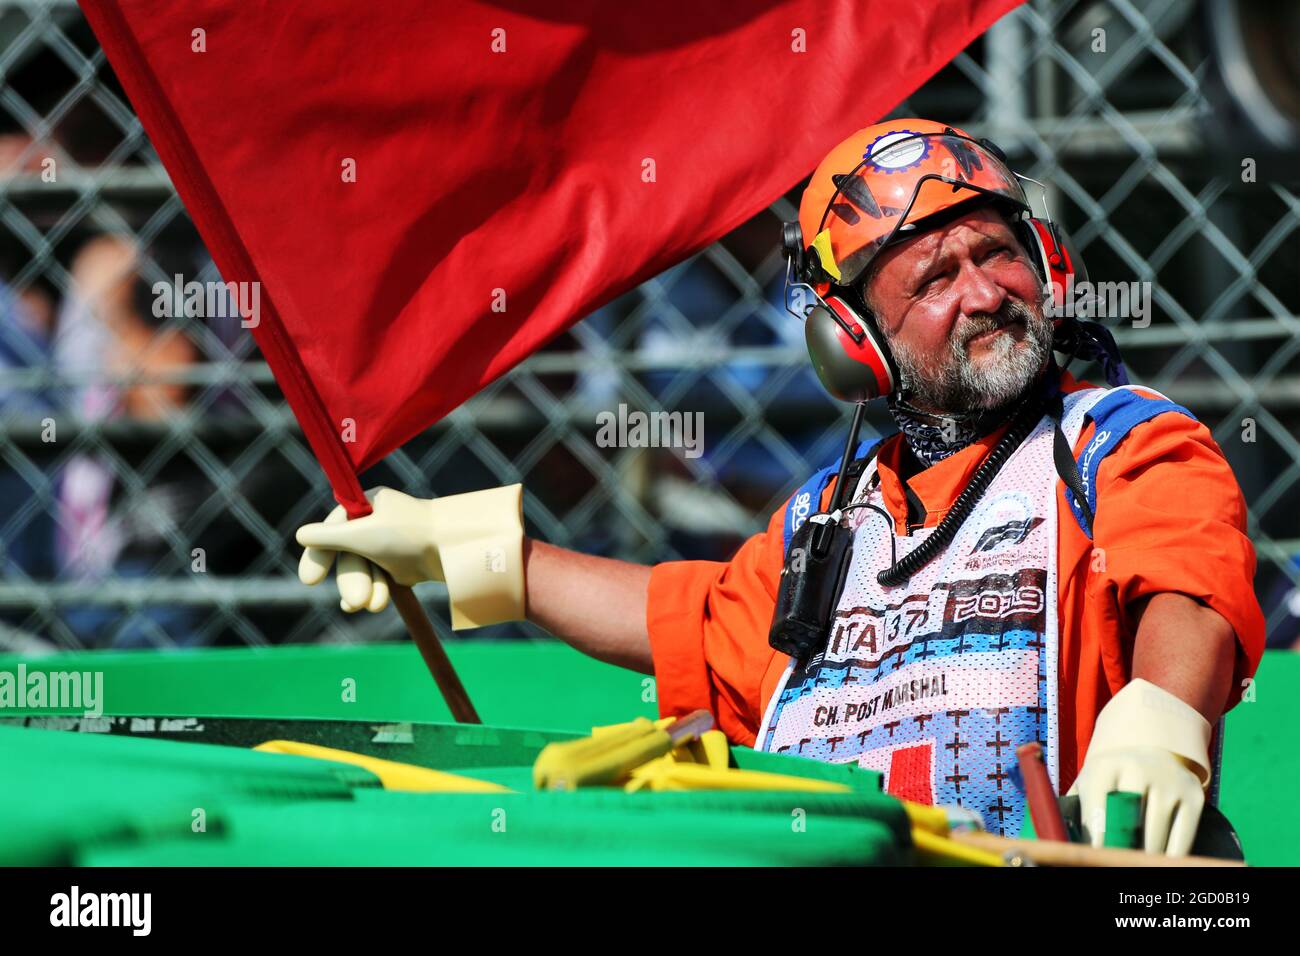 Während des Qualifyings winkt ein Marschall mit der roten Flagge. Großer Preis von Italien, Samstag, 7. September 2019. Monza Italien. Stockfoto